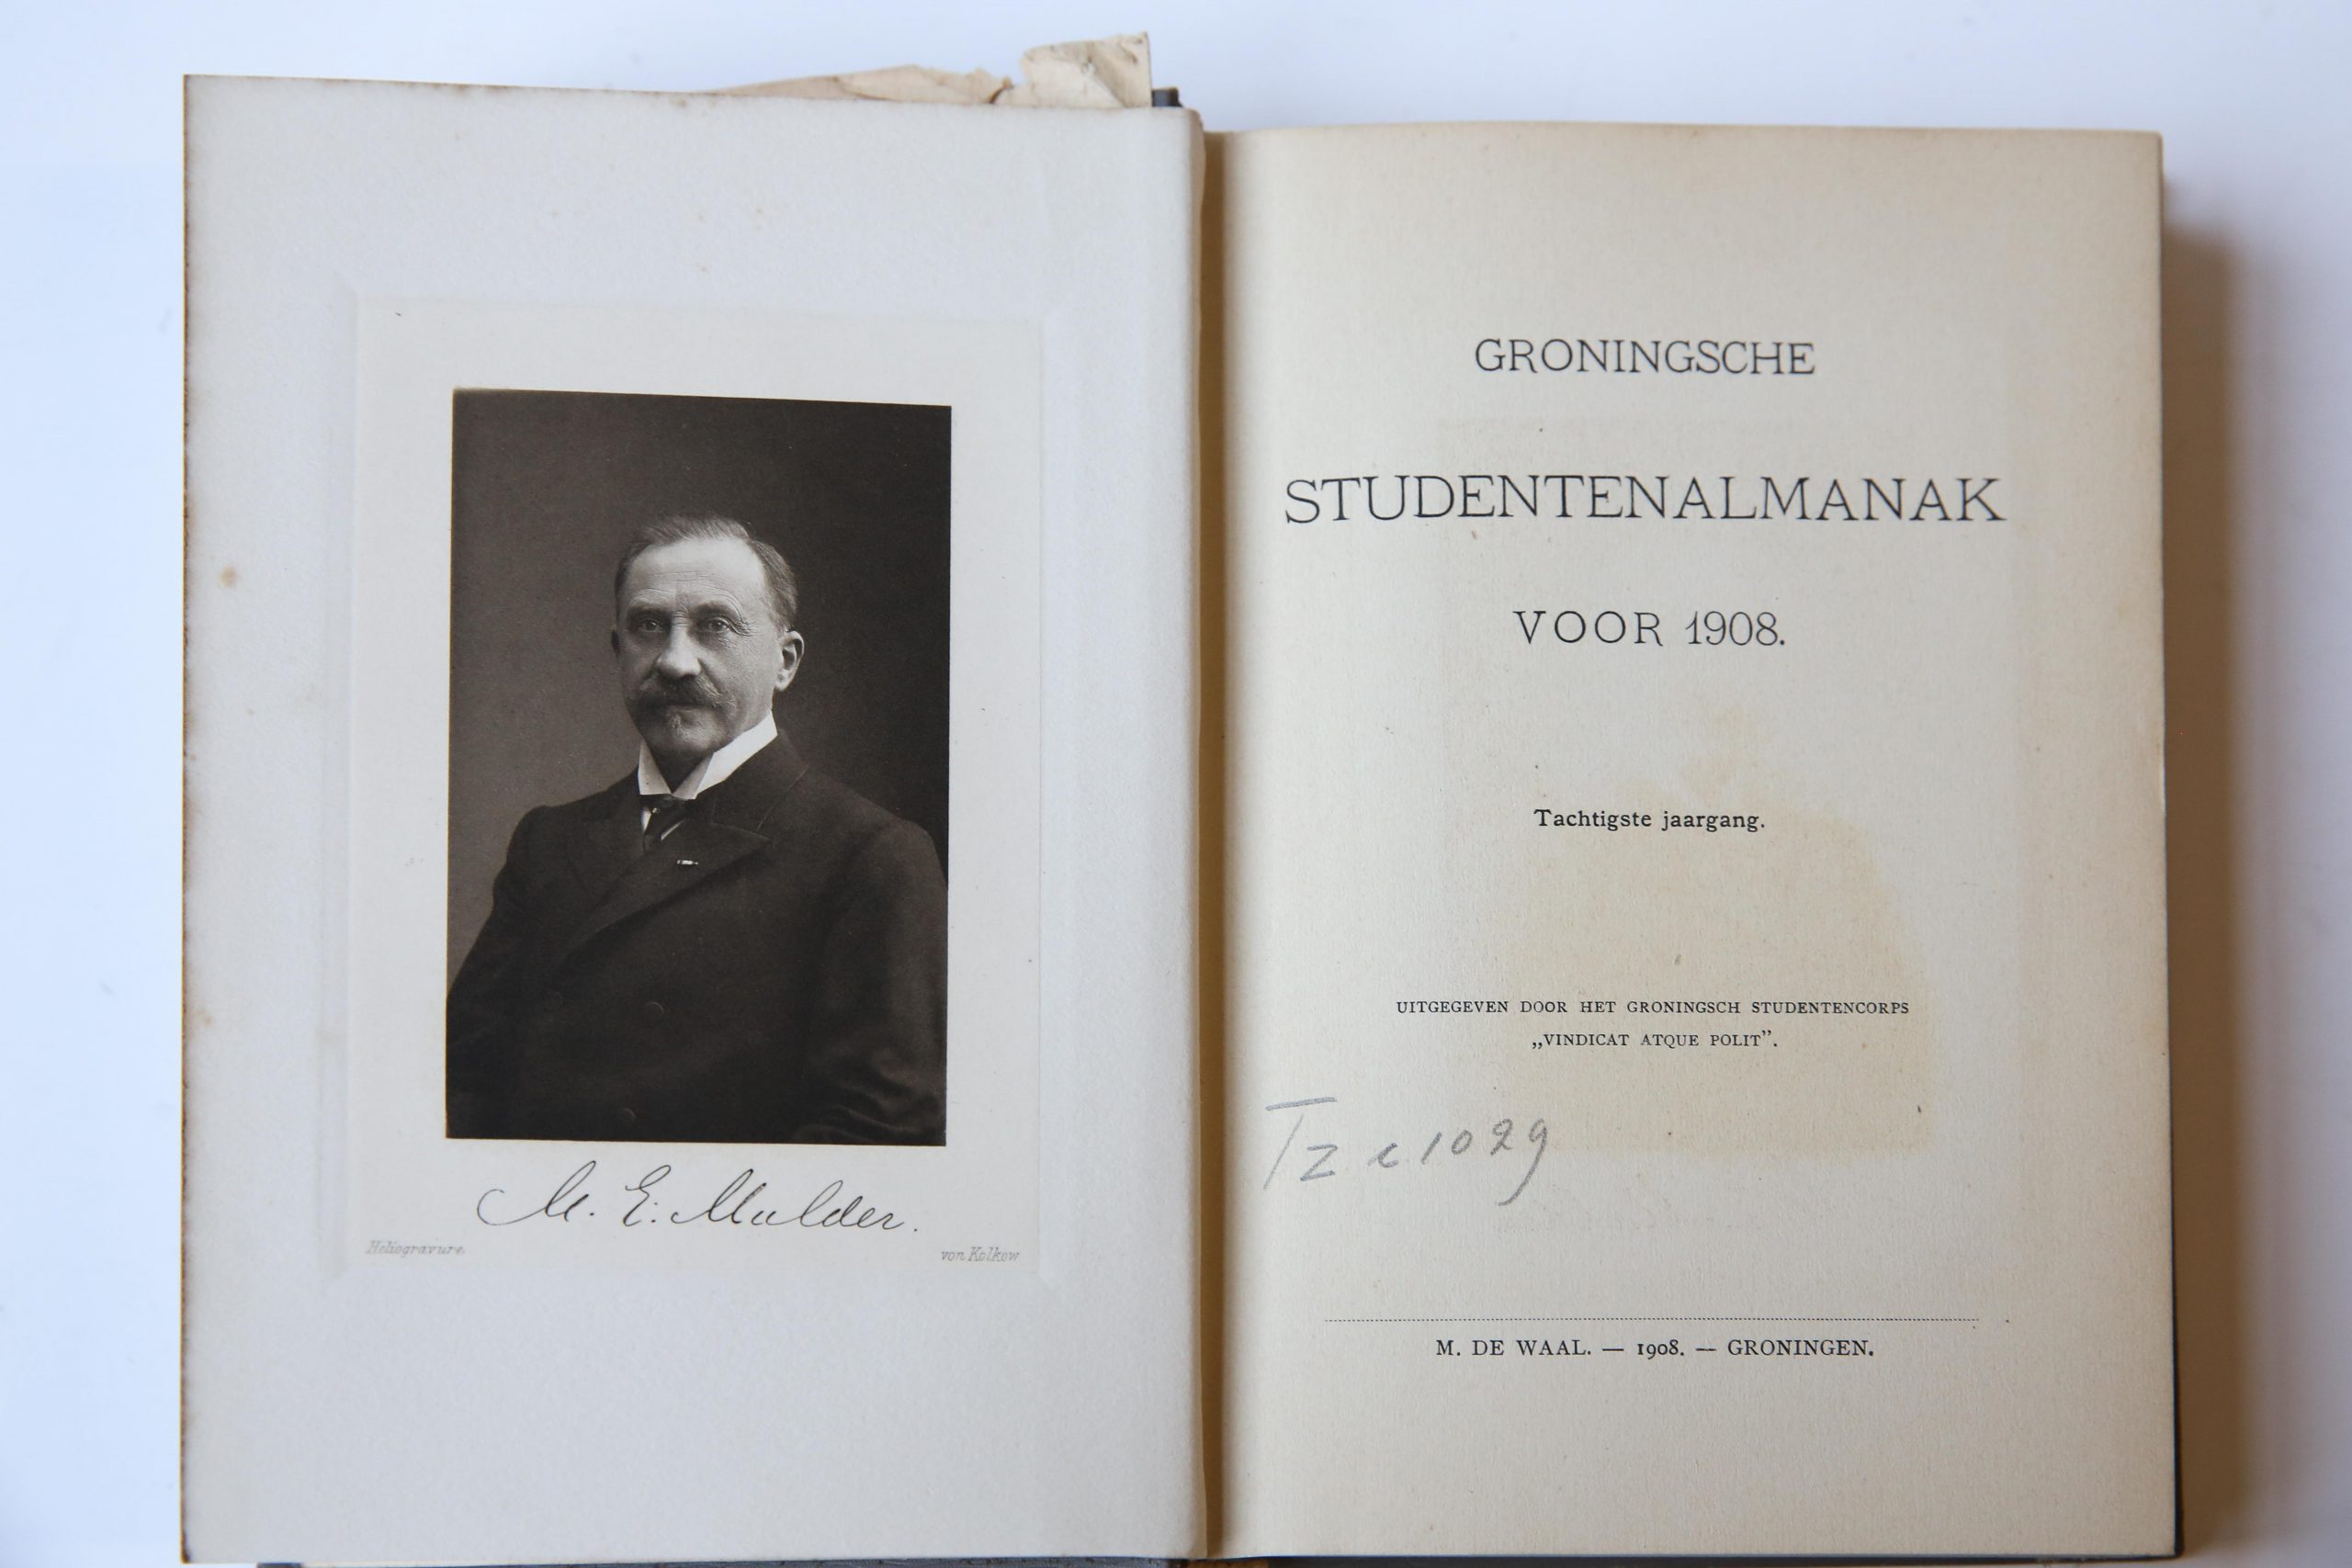 Groningsche studentenalmanak voor het jaar 1908, Tachtigste jaargang, Groningsch Studentencorps M. De Waal Groningen 1908, 348 pp. Text in Dutch.